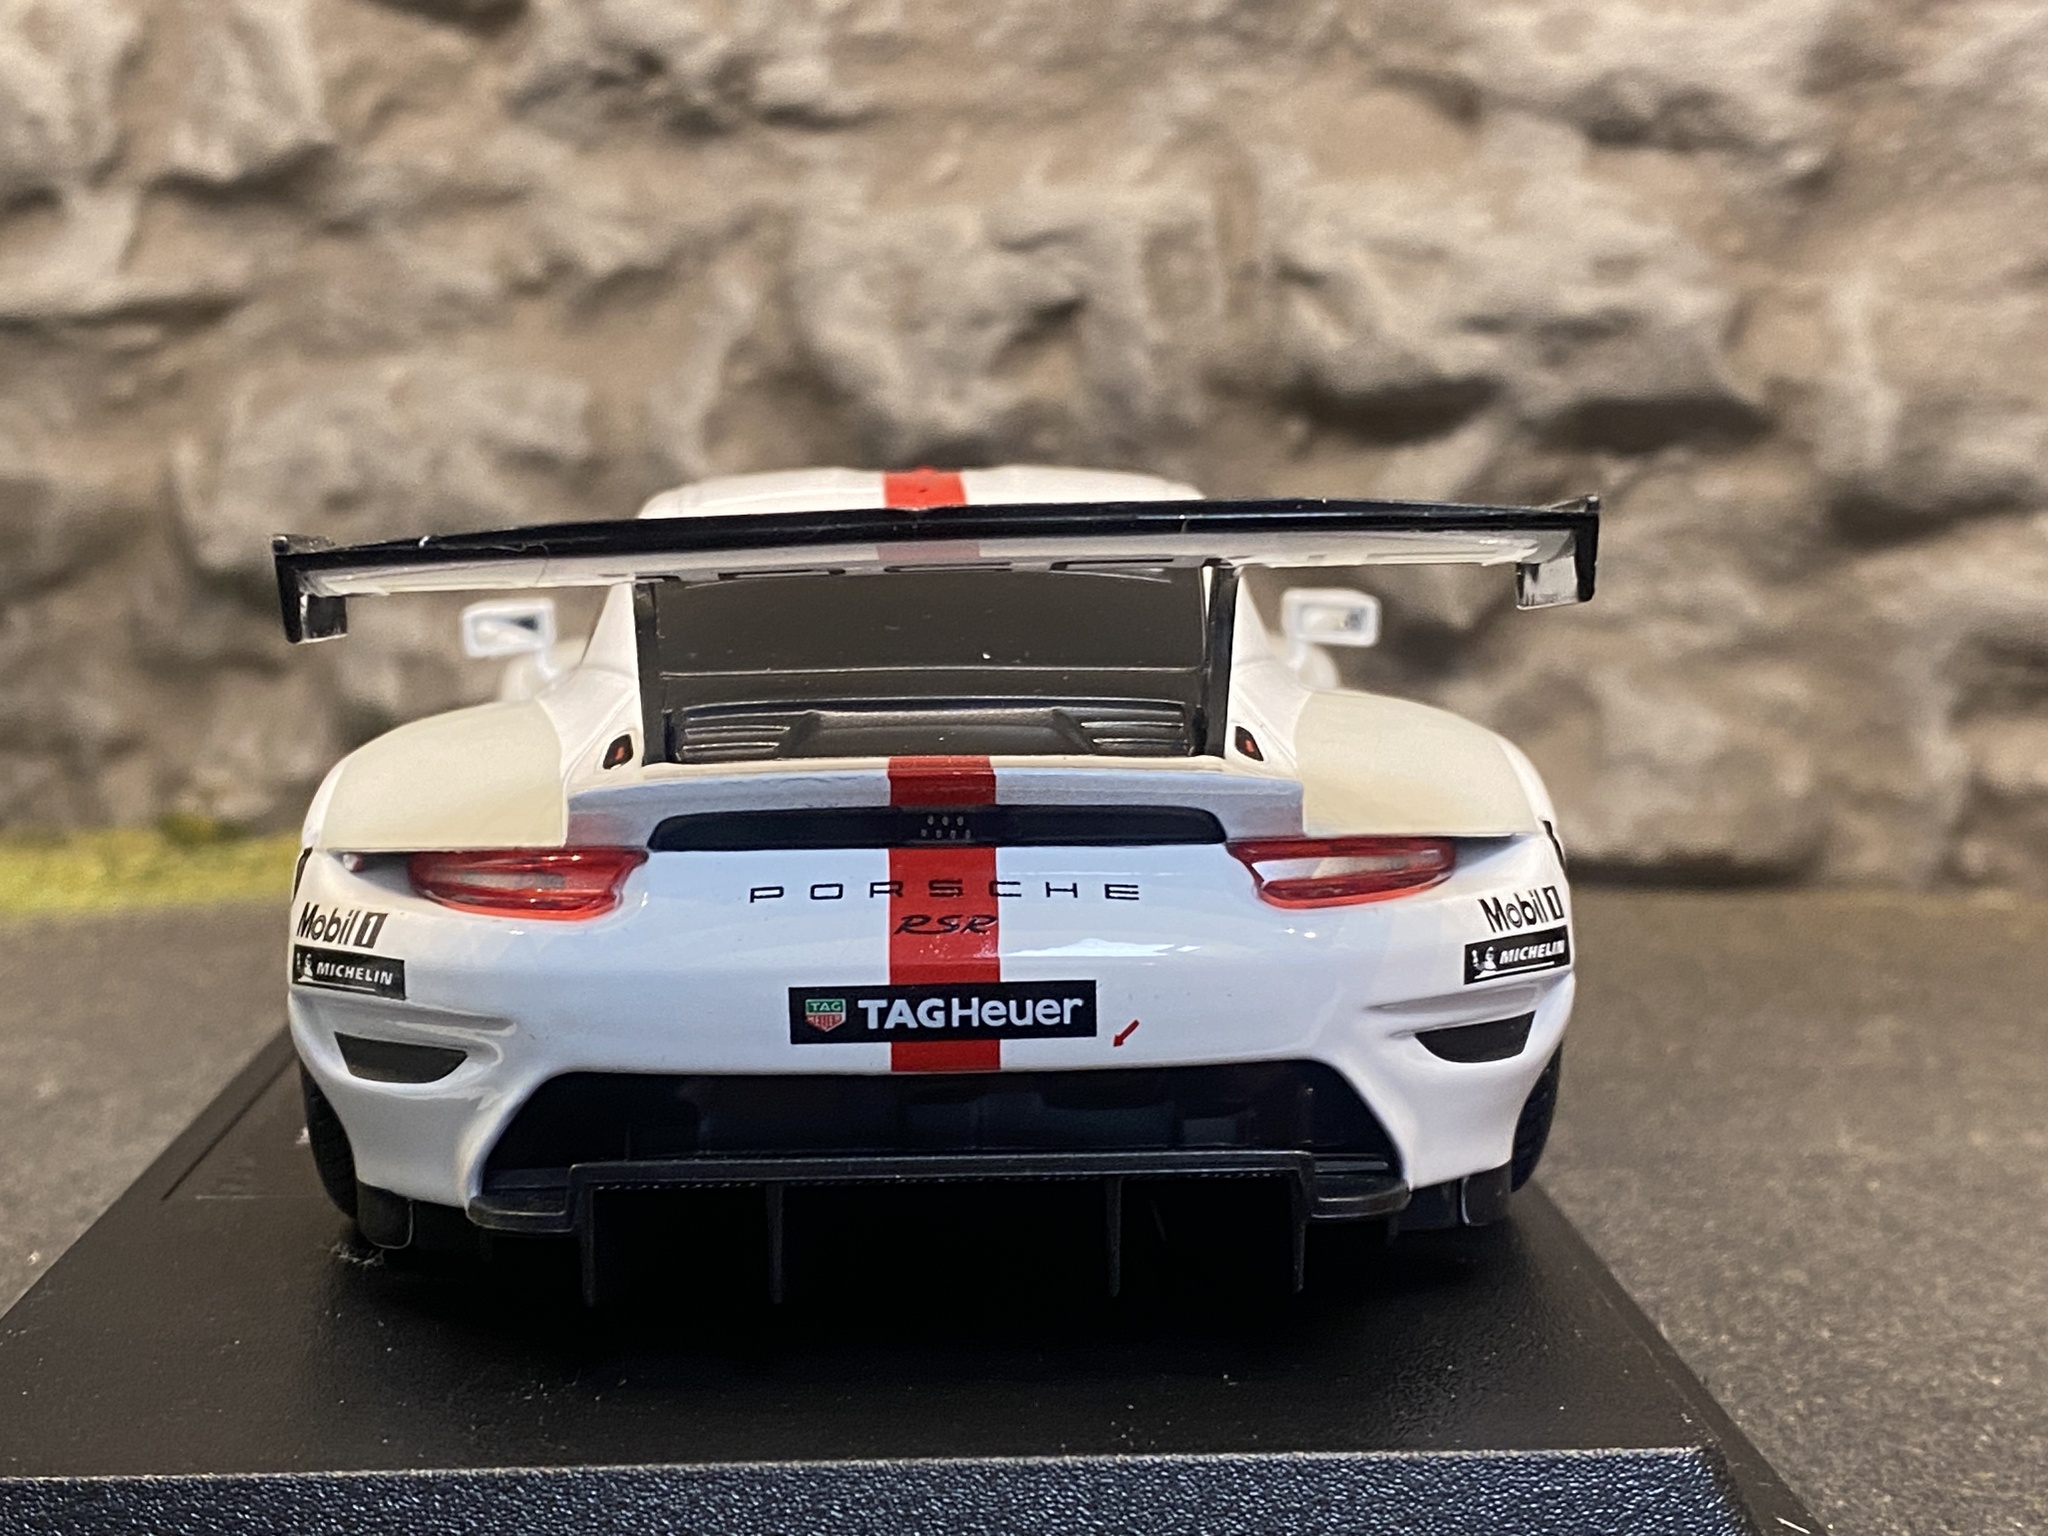 Skala 1/24 Porsche 911 RSR GT #911, fr Bburago, Prisnedsatt pga spricka i förpackn